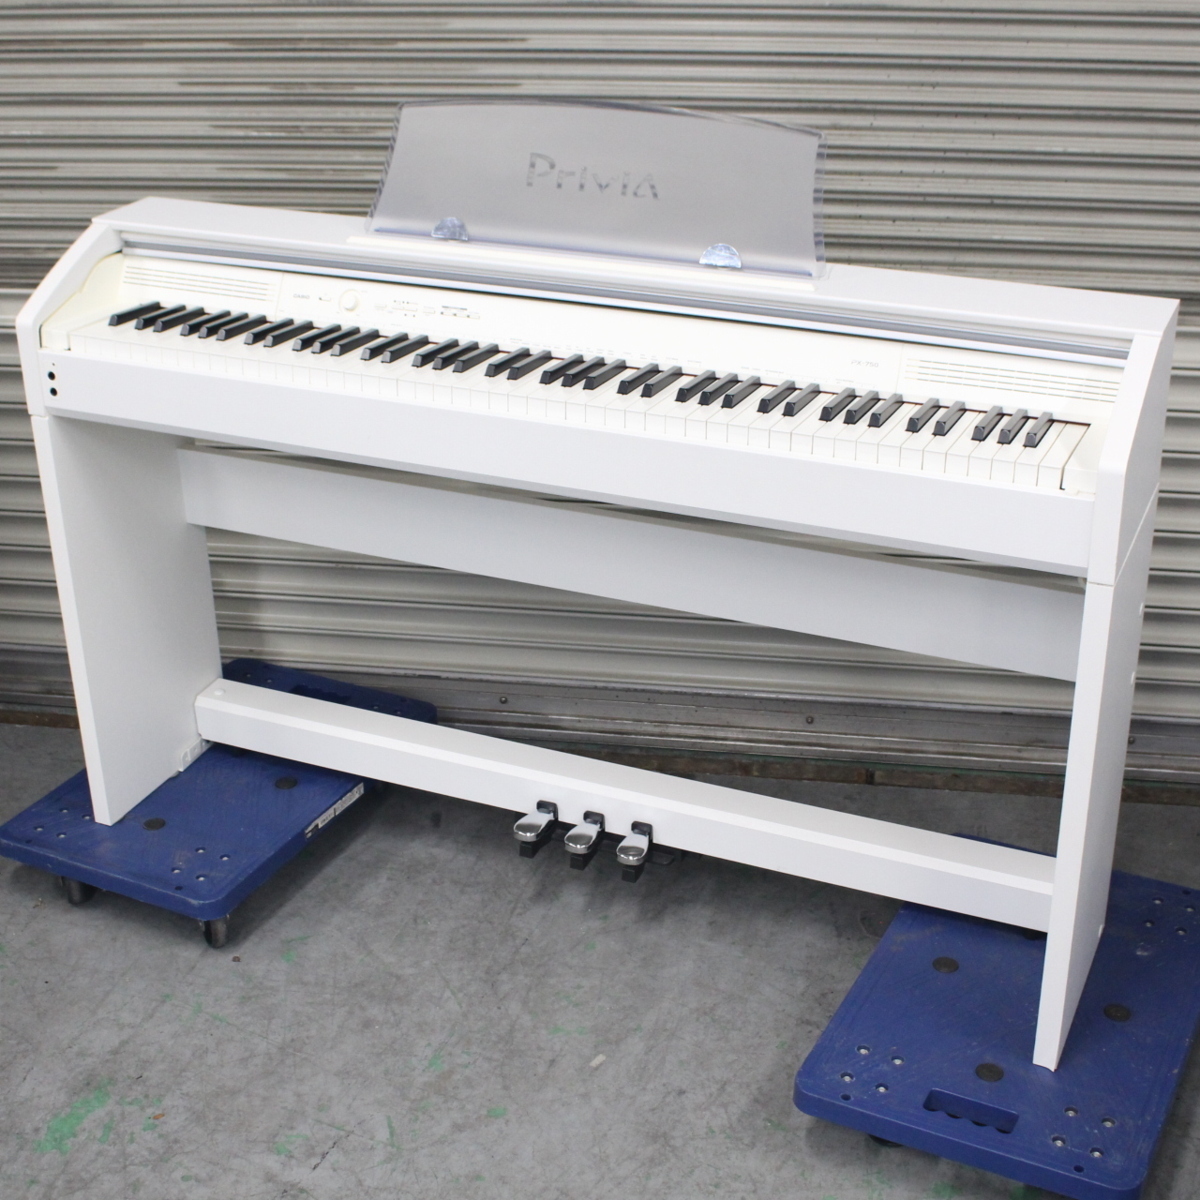 横浜市神奈川区にて カシオ 電子ピアノ PriviA PX-750WE 2013年製 を出張買取させて頂きました。